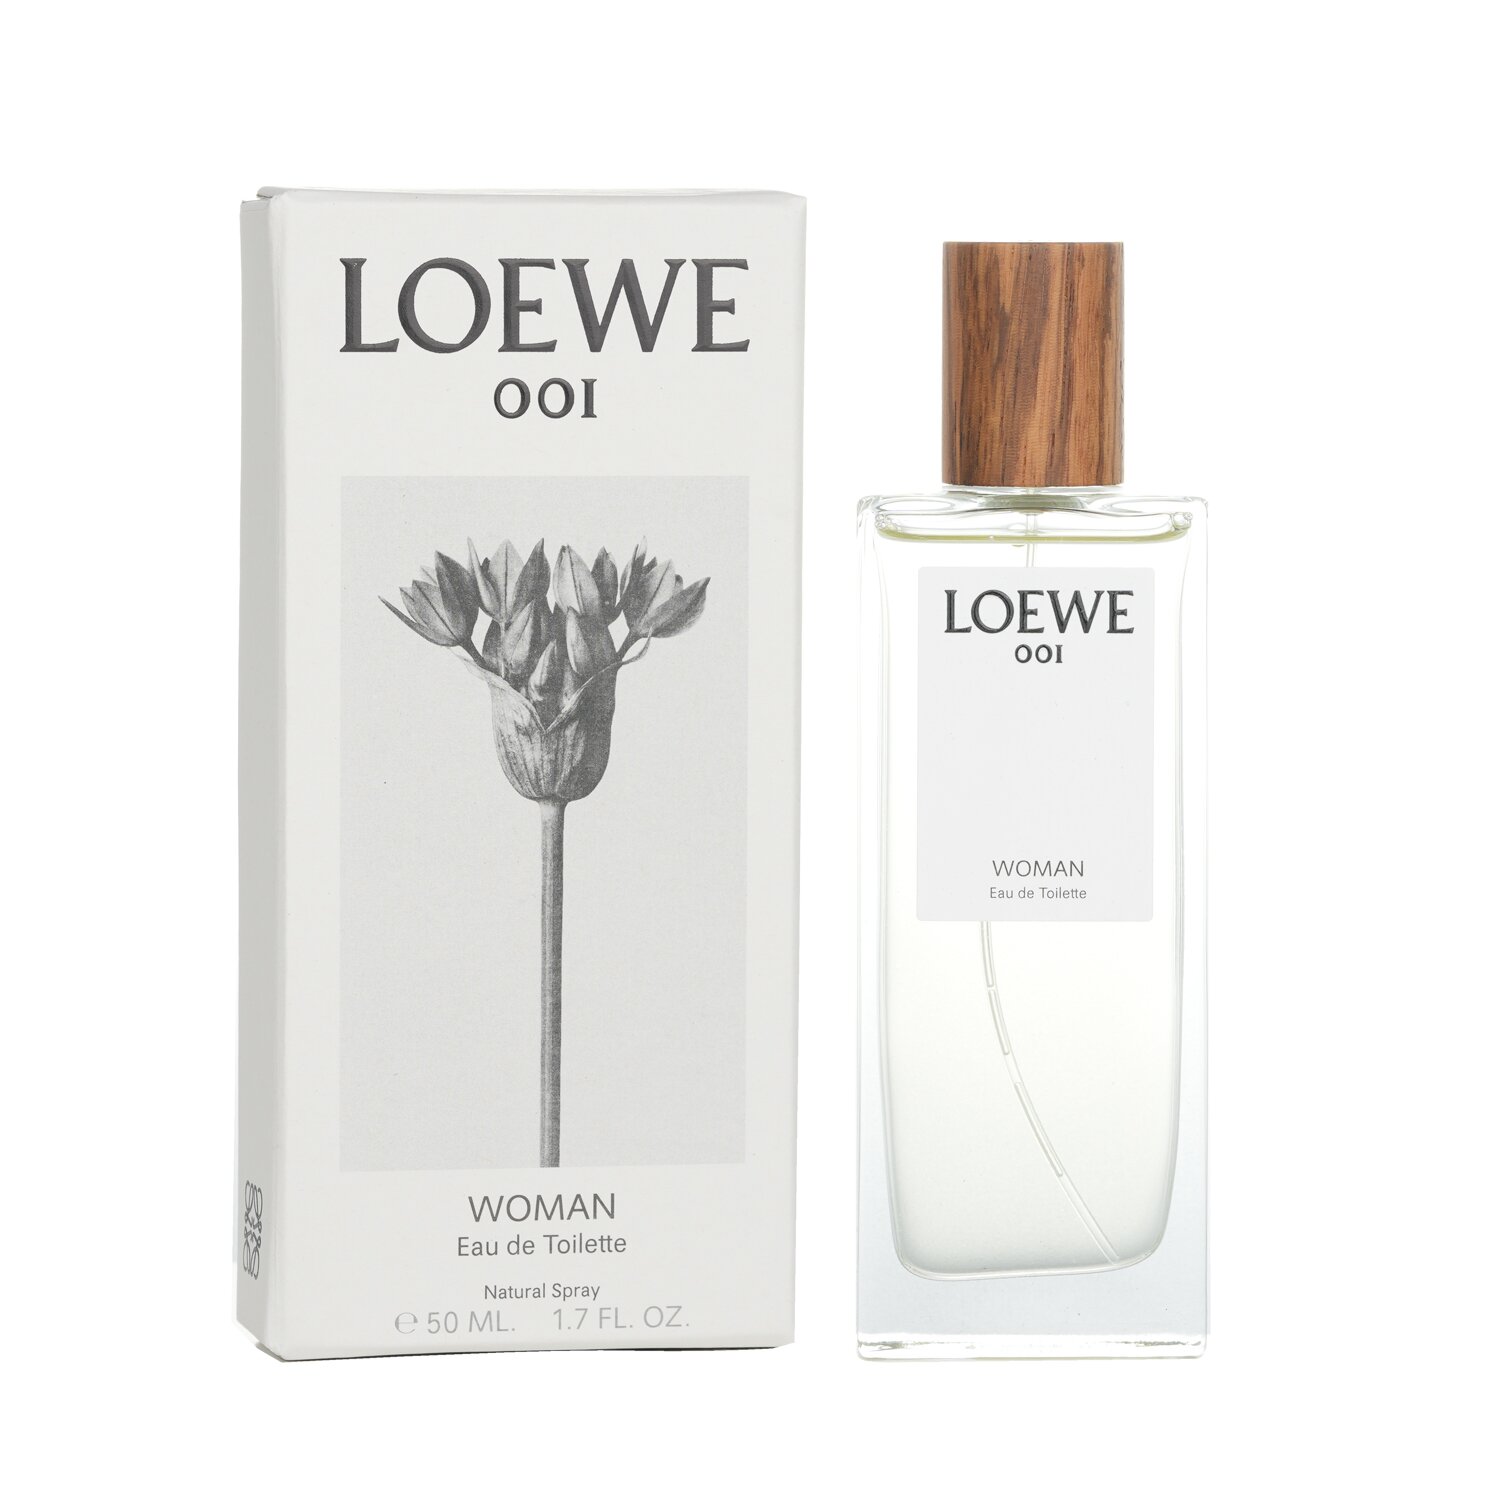 Loewe 001 Eau De Toilette Spray 50ml/1.7oz